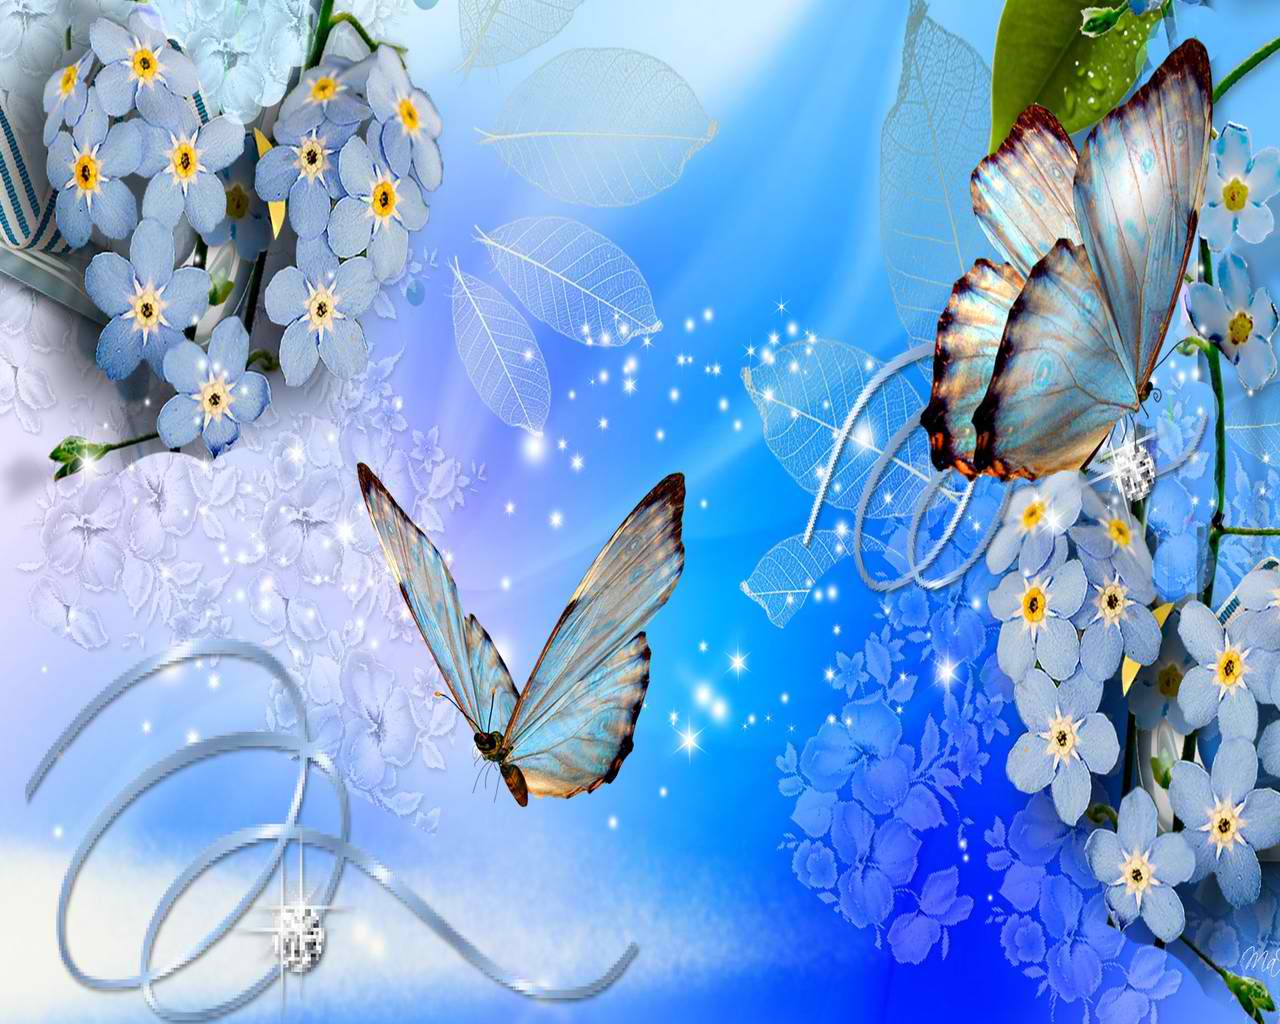 Download high definition Blue butterflies wallpaper. Butterfly